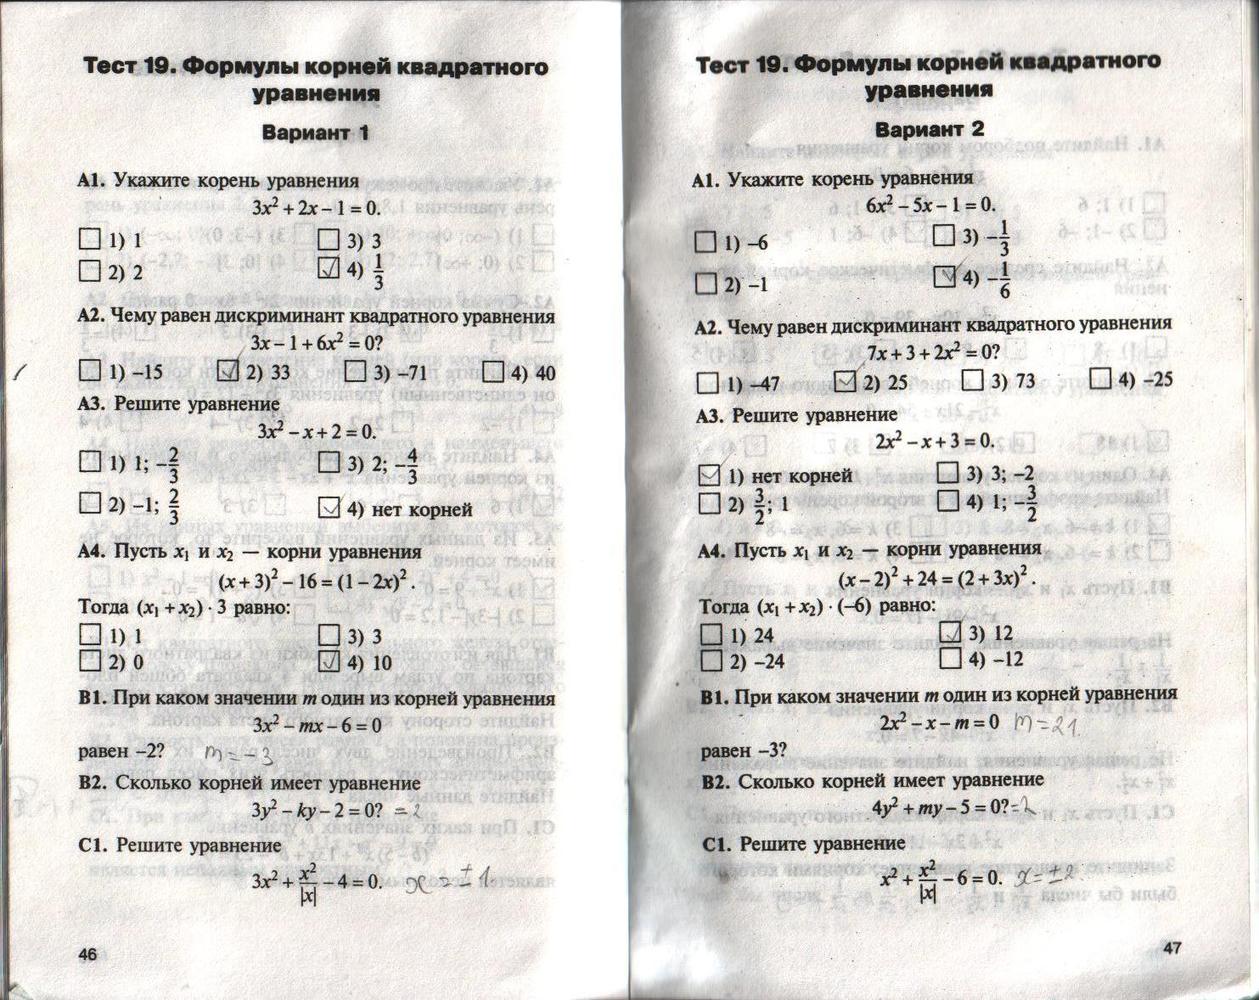 Тест уравнения 7 класс алгебра. Контрольно-измерительные материалы по алгебре. Тест по алгебре 8 класс квадратные уравнения. Тест квадратные корни. Контрольно-измерительные материалы по алгебре 8 класс.